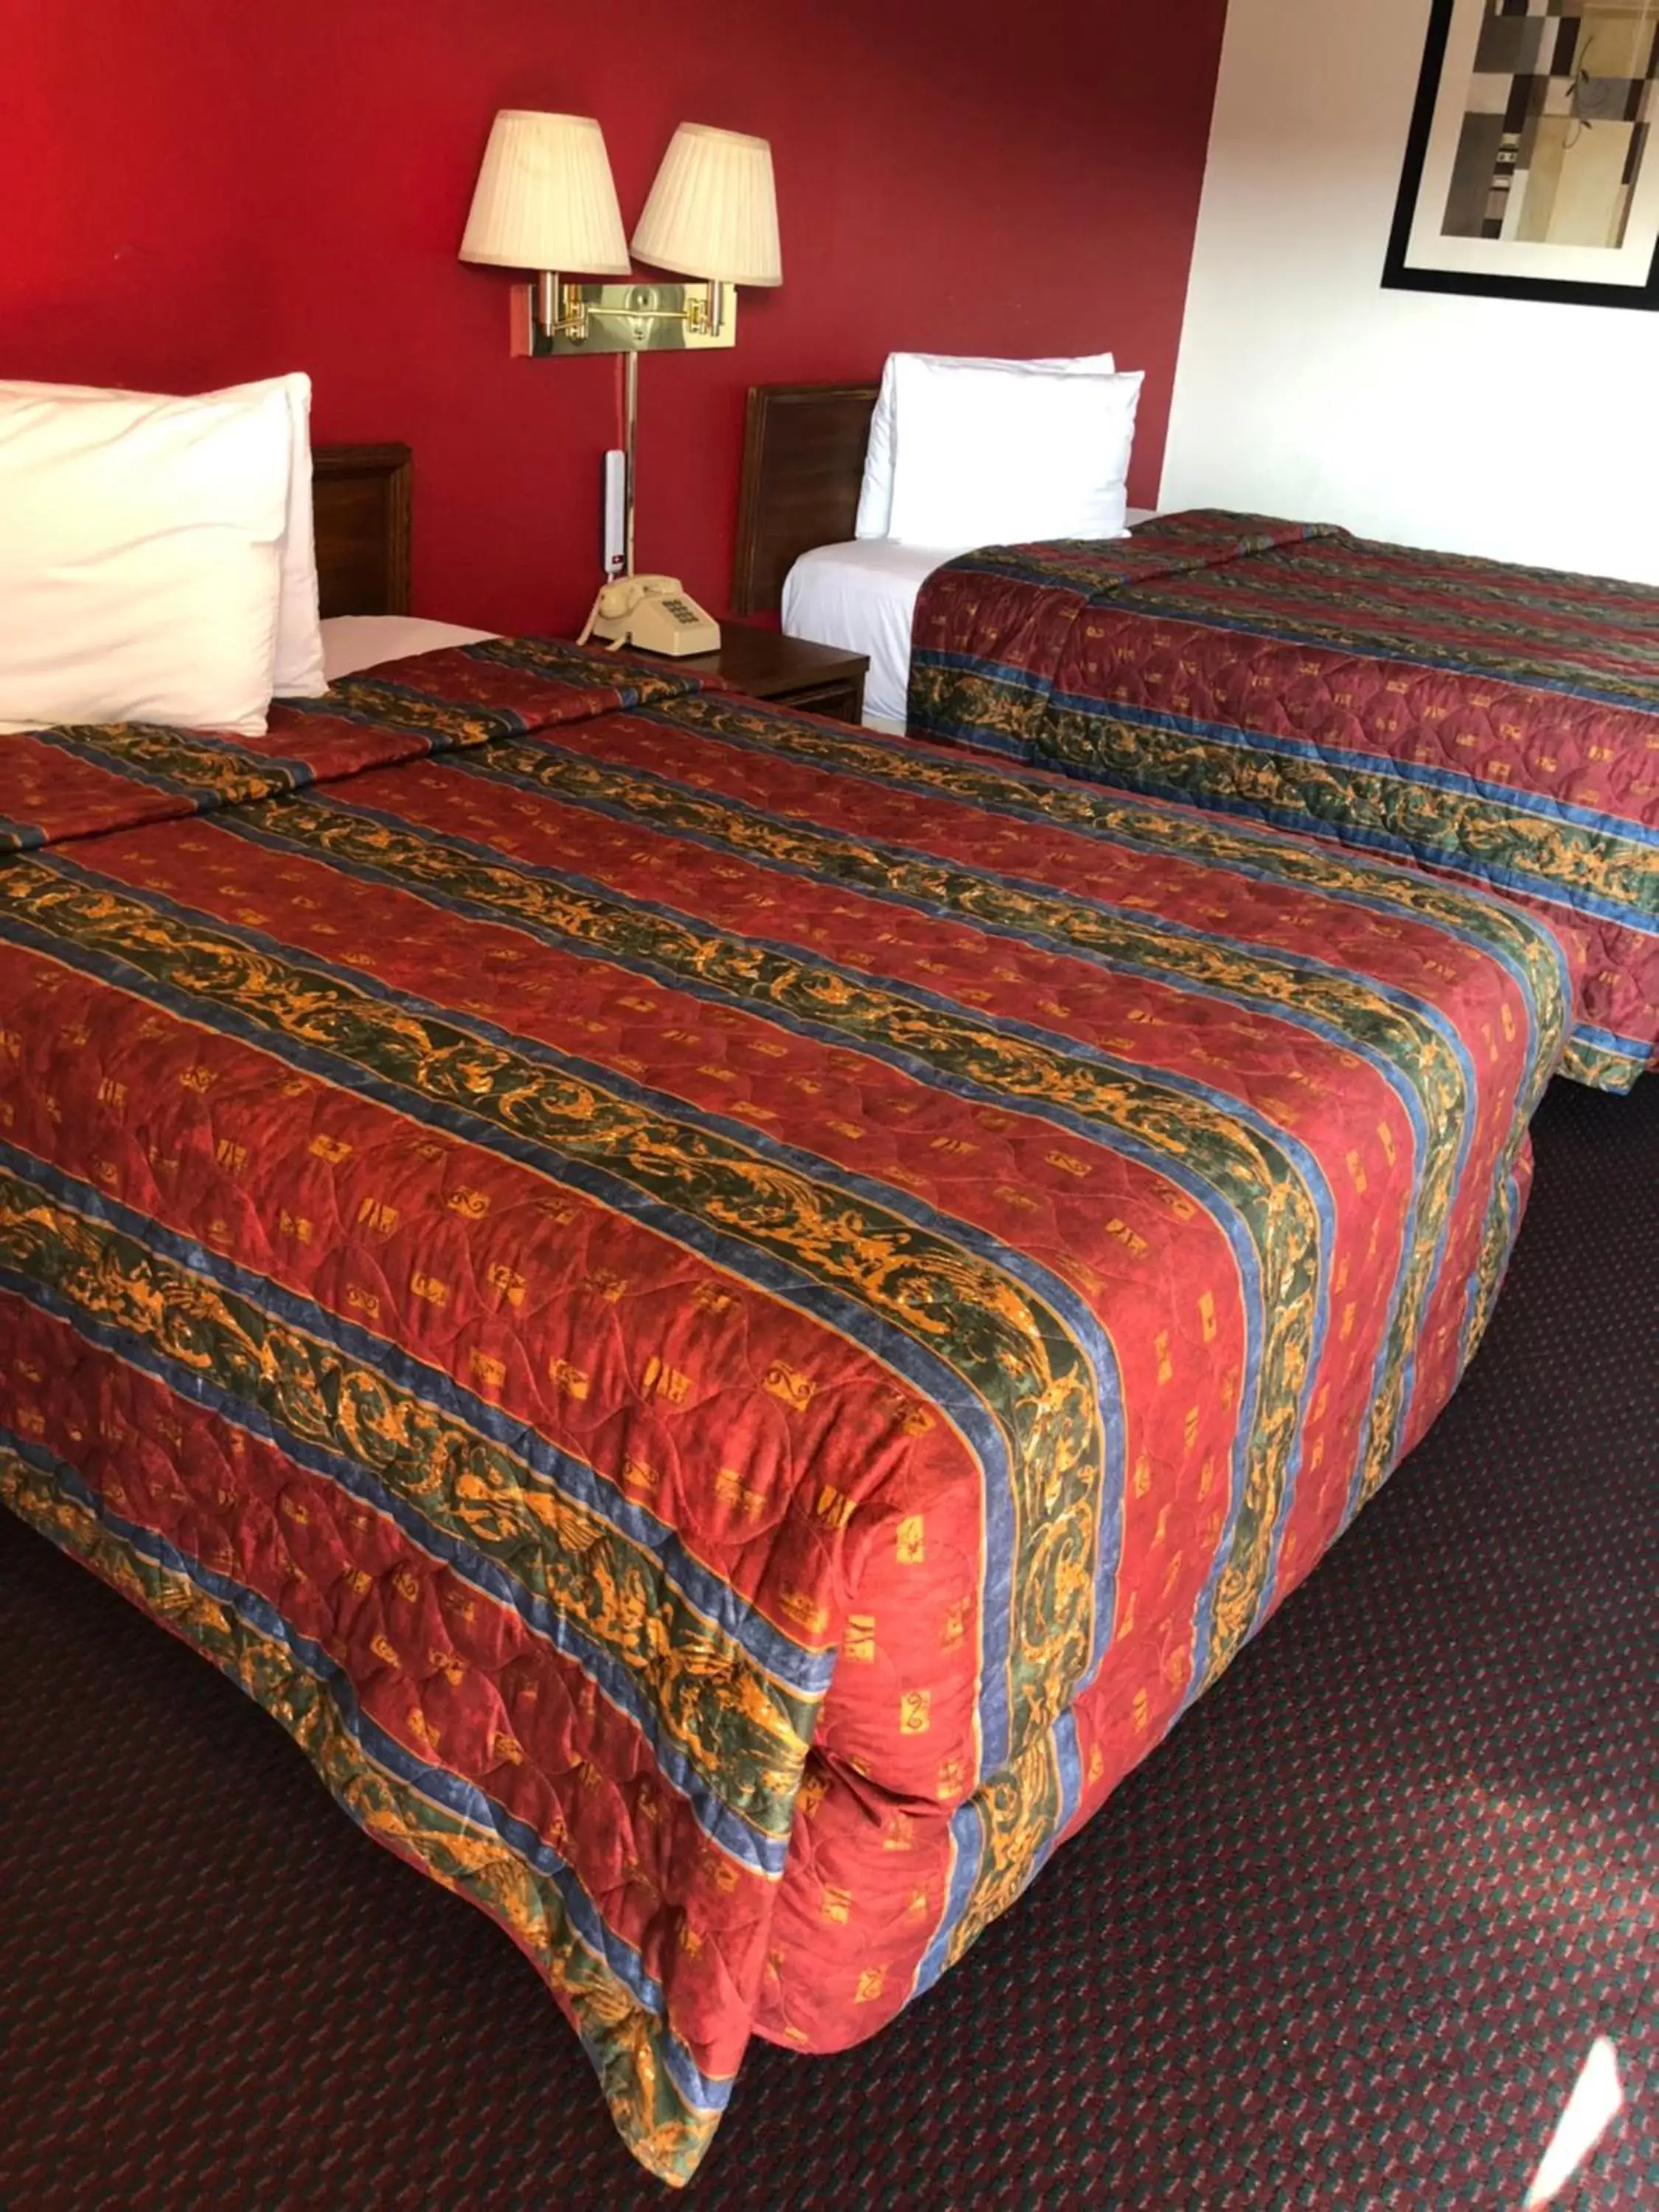 Bed in Rexdale Inn